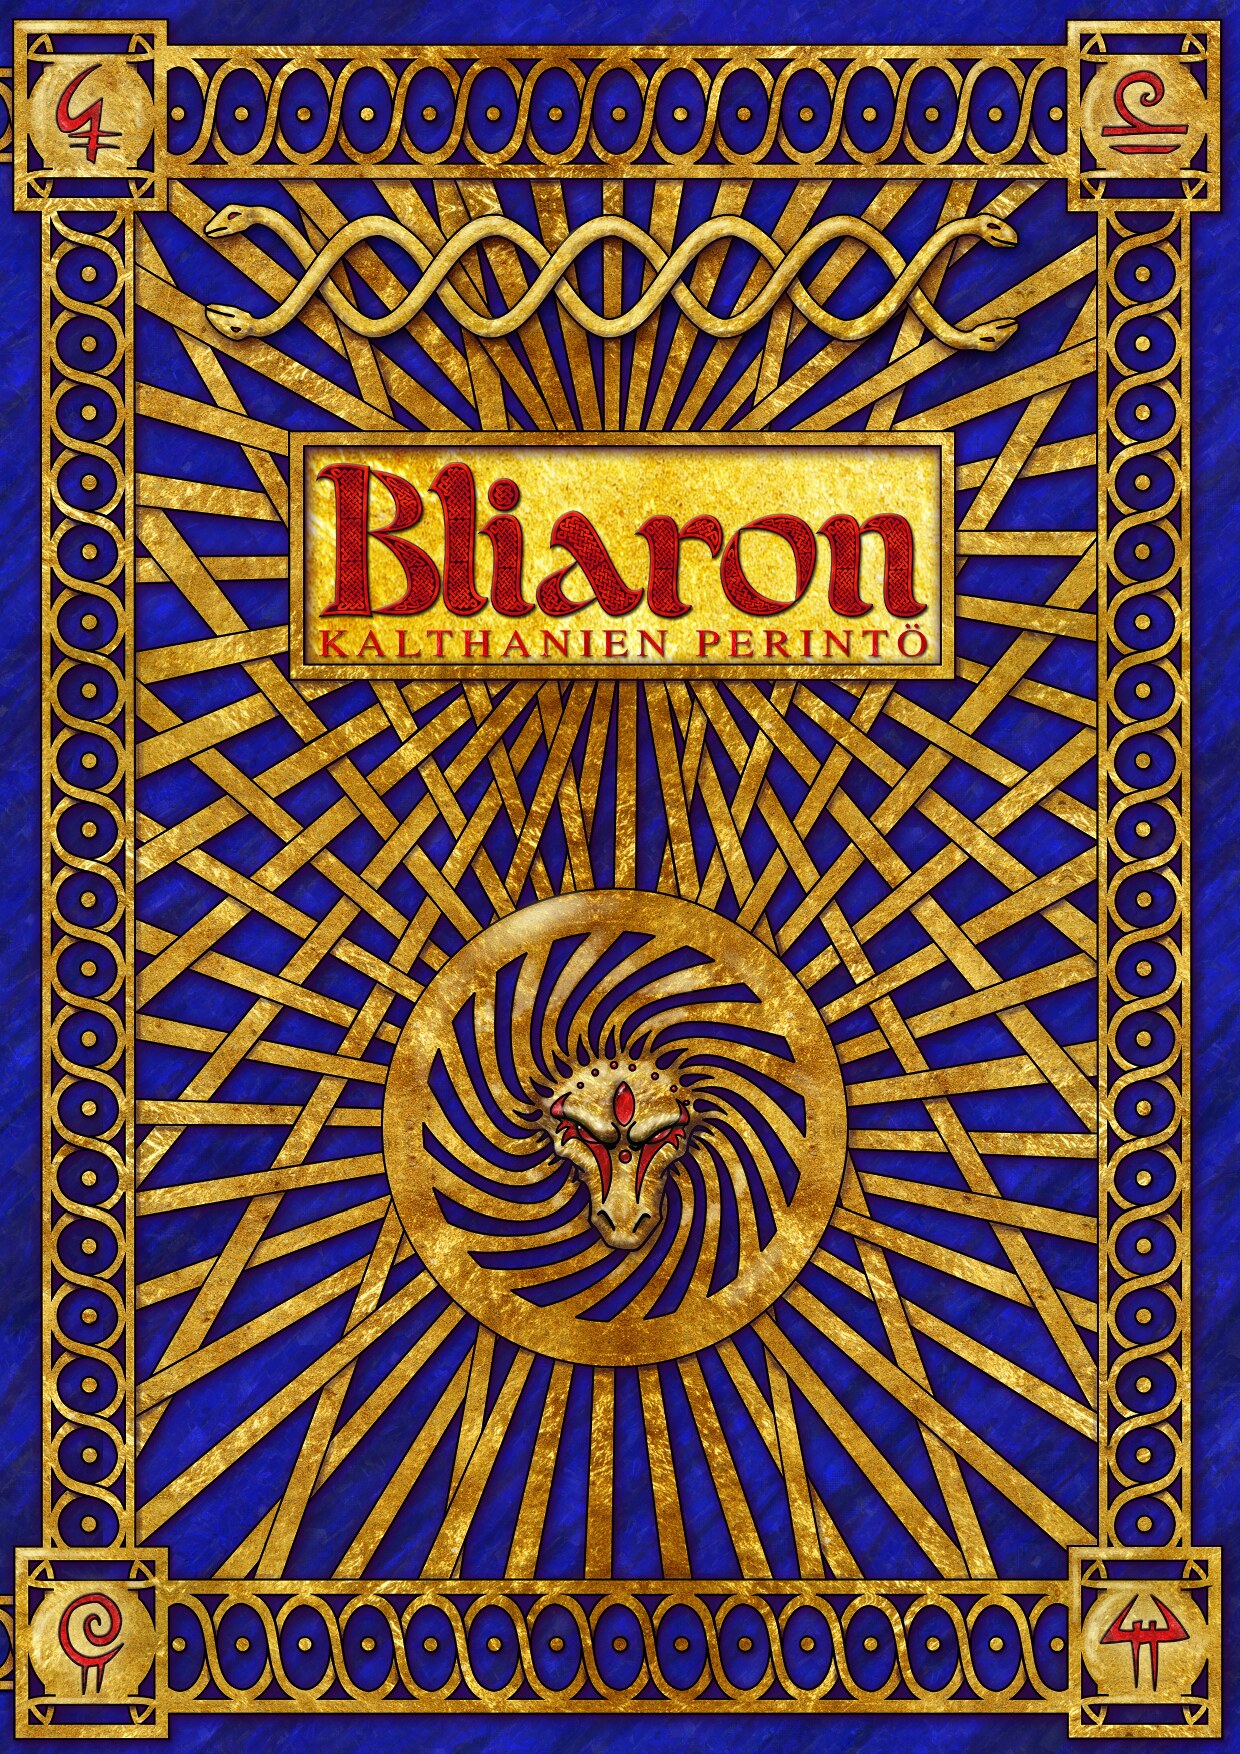 Bliaron - Kalthanien perintö